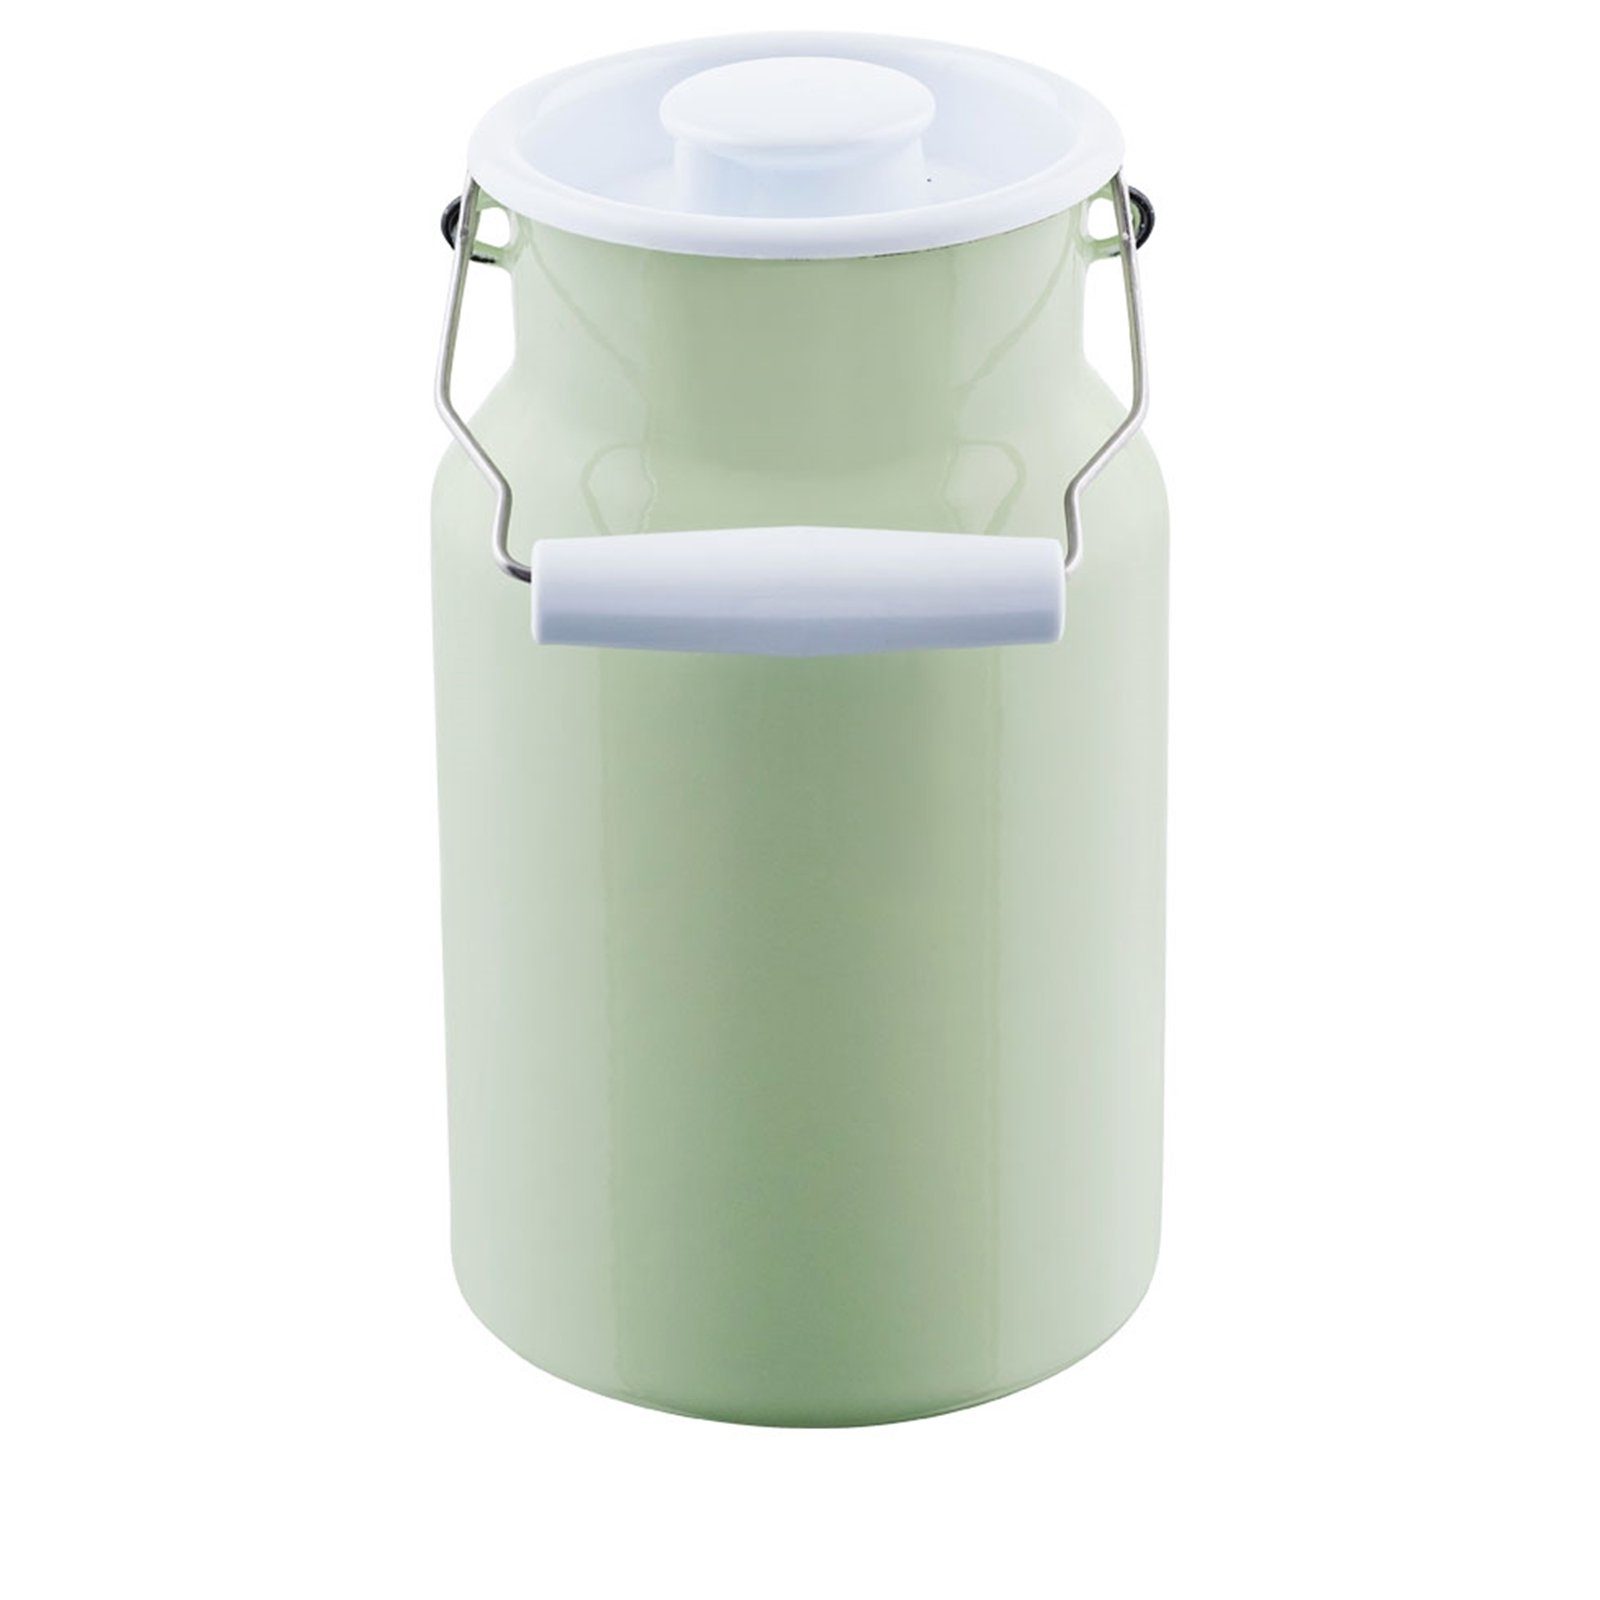 Riess Milchkanne Milchkanne mit Deckel 2 Liter Classic Color, 2 l, Schnitt-  und kratzfest, Bakterienhemmend und aromaneutral, Leicht zu reinigen